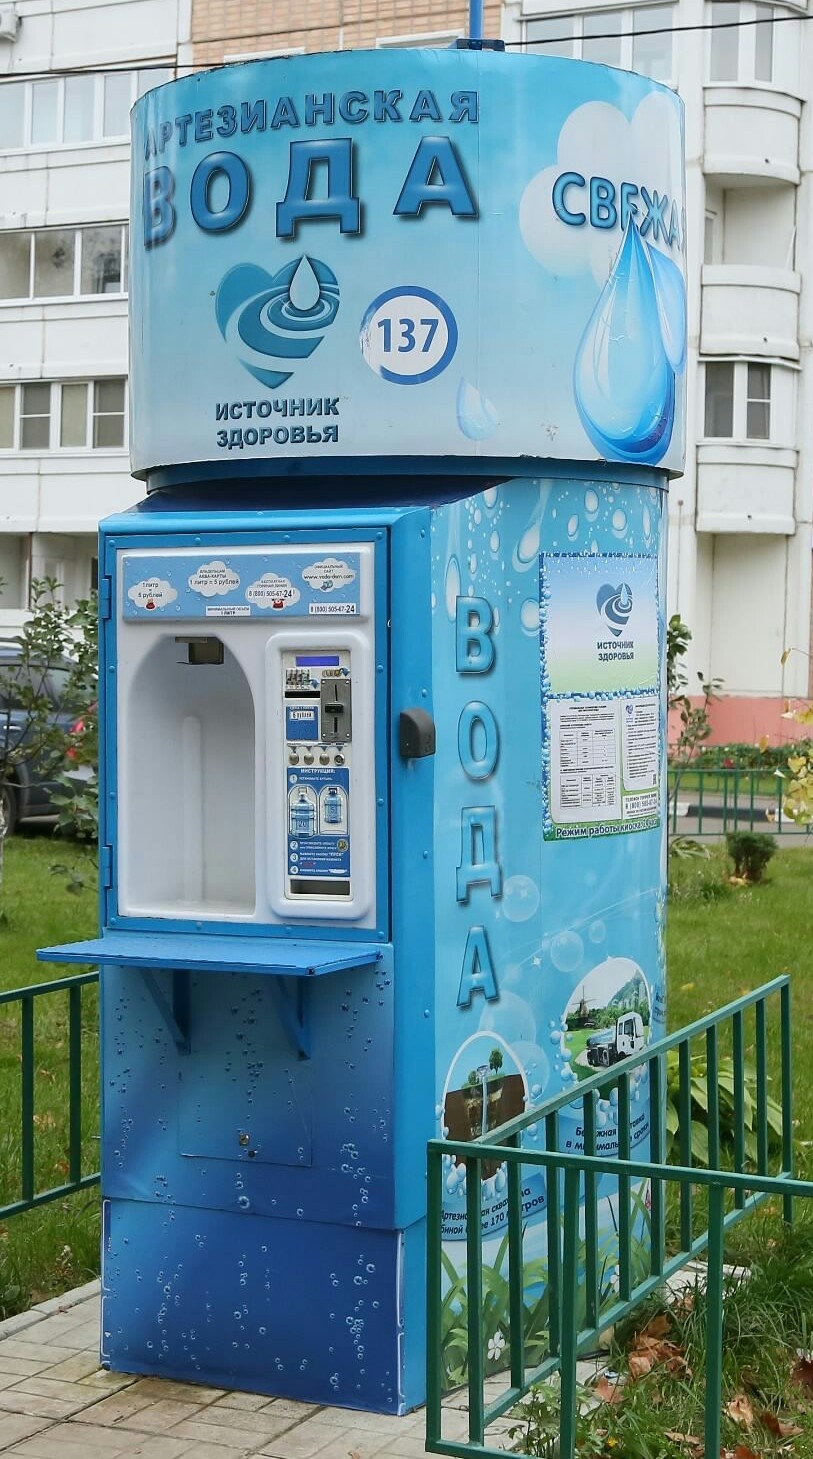 Очищенная вода автомат. Автомат с водой. Аппарат для питьевой воды на улице. Аппарат артезианской воды. Аппараты для питьевой воды на розлив.